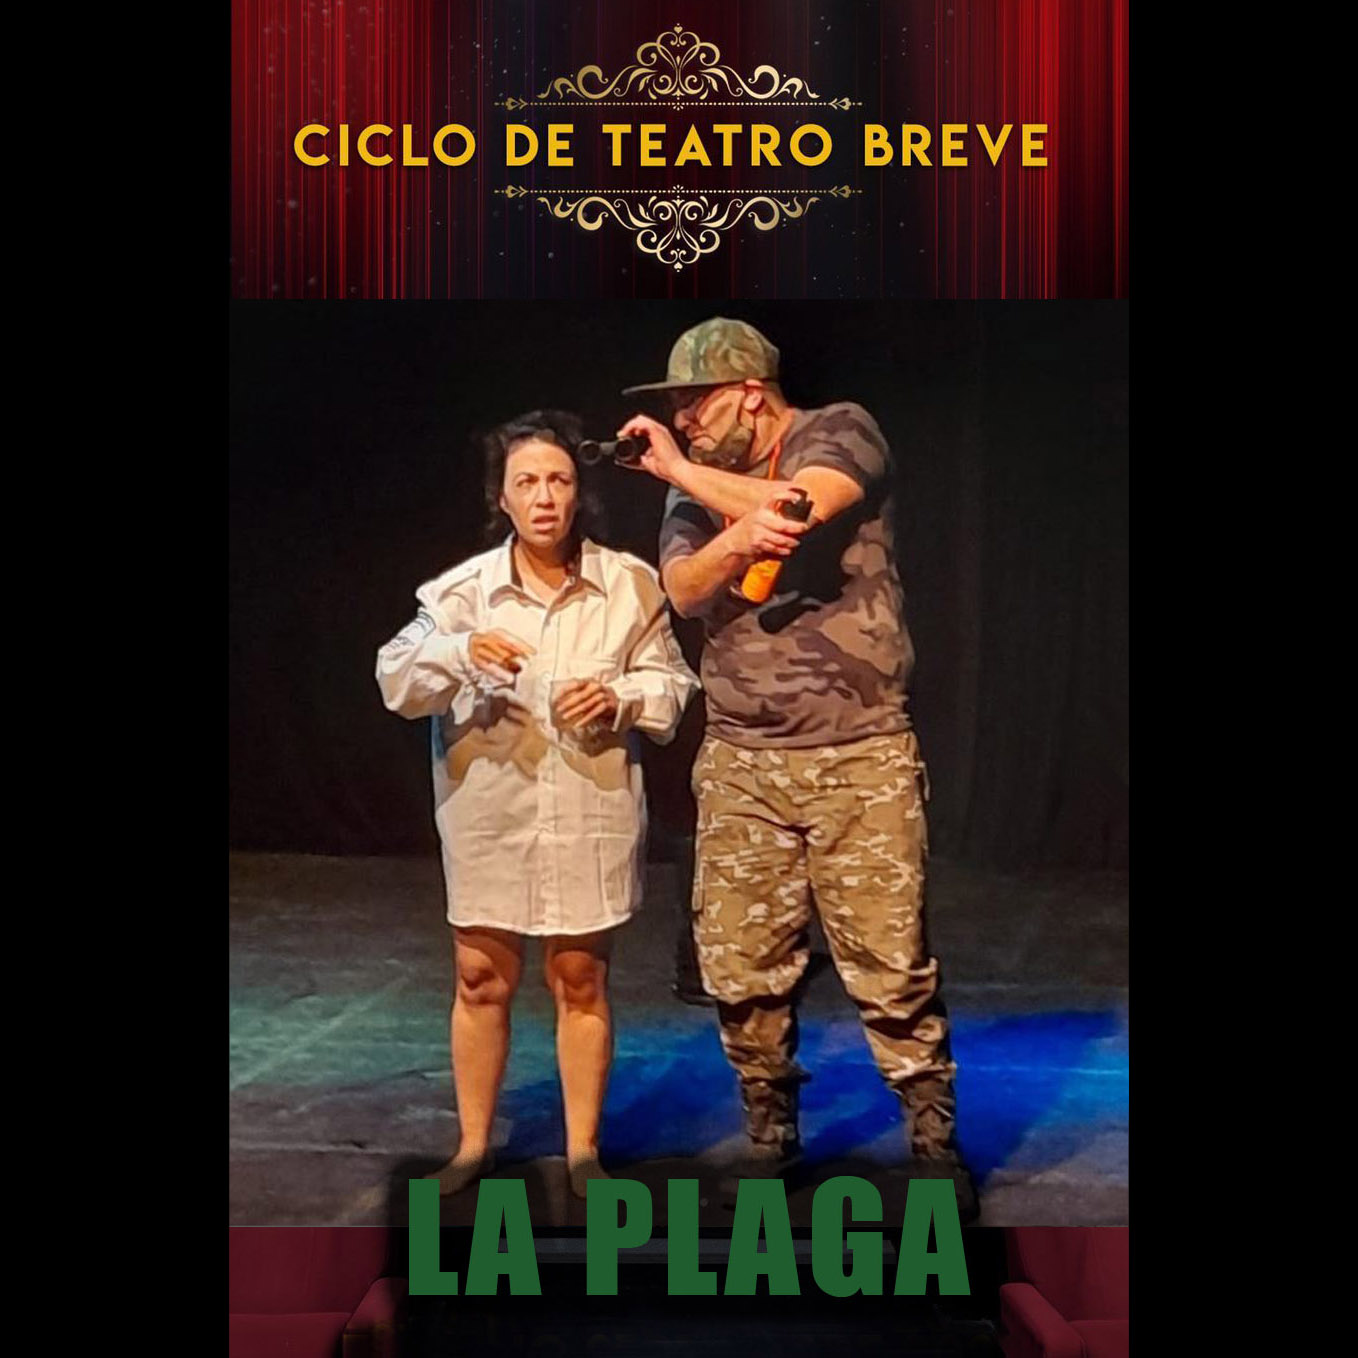 pa-plaga-afiche-ciclo-teatro-breve_1-1